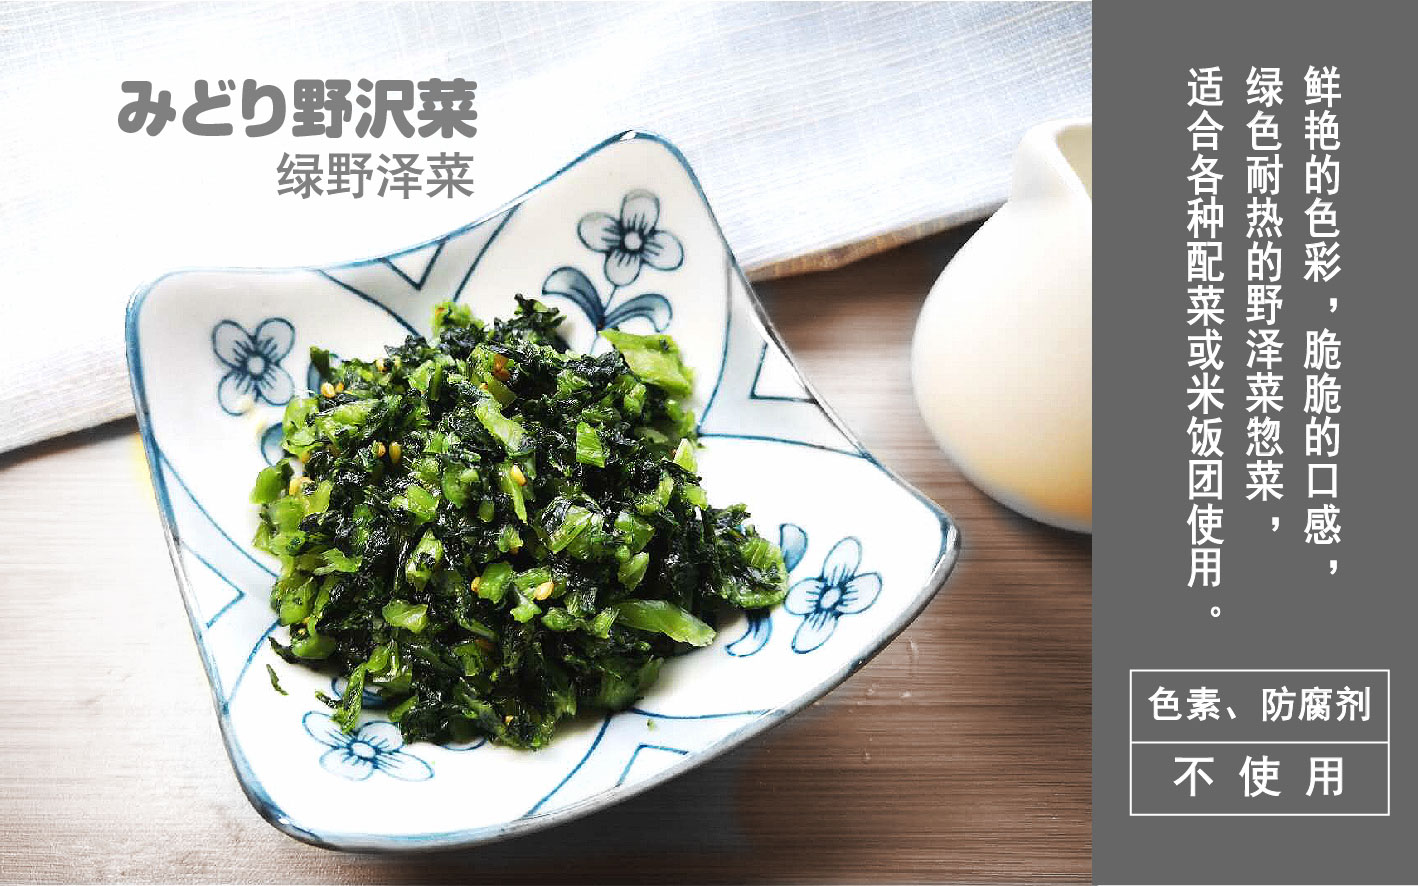 綠野澤菜2_畫板 1.jpg